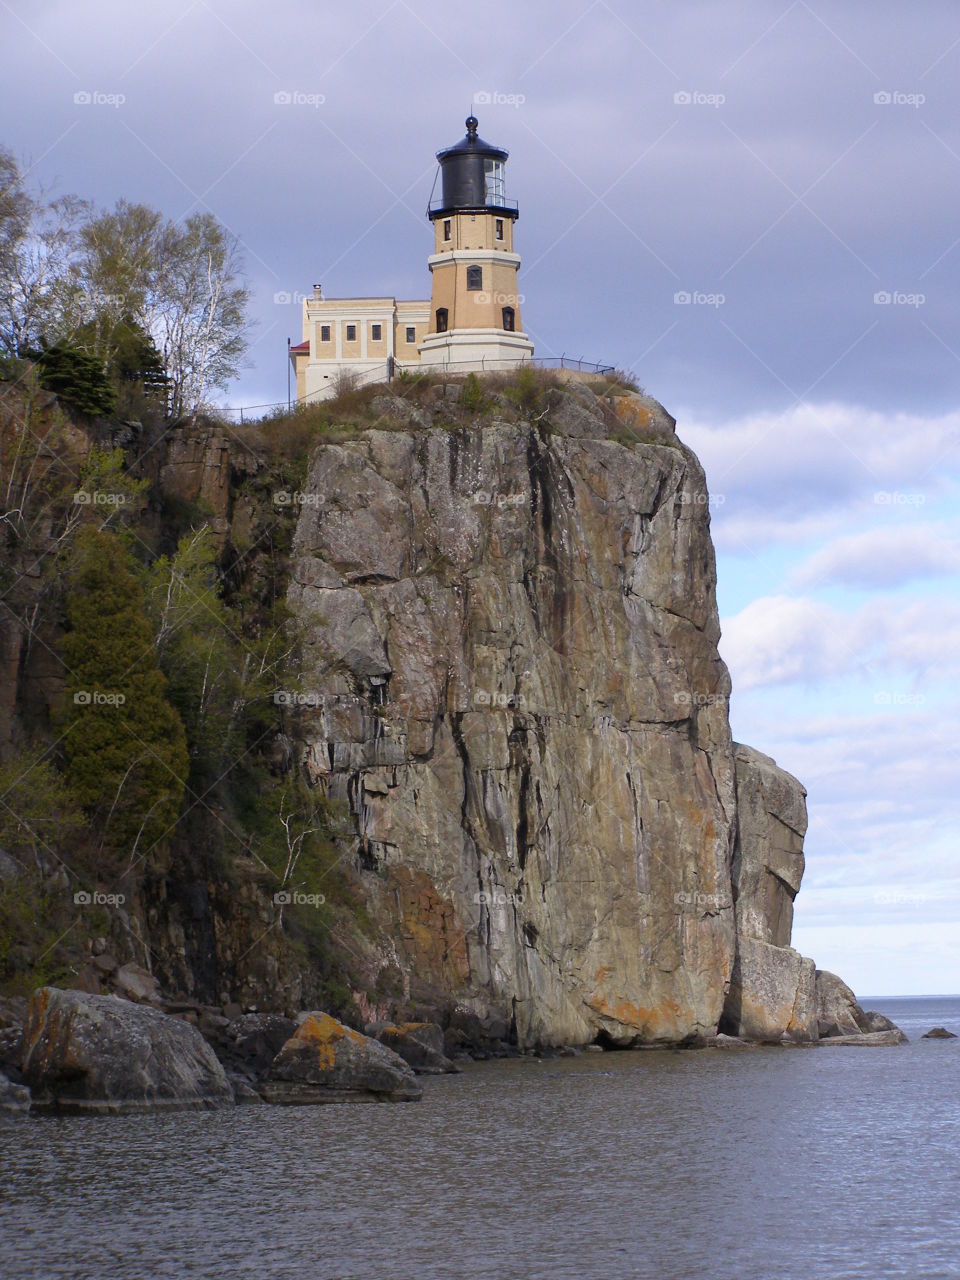 Light on a hill (Split Rock Lighthouse)